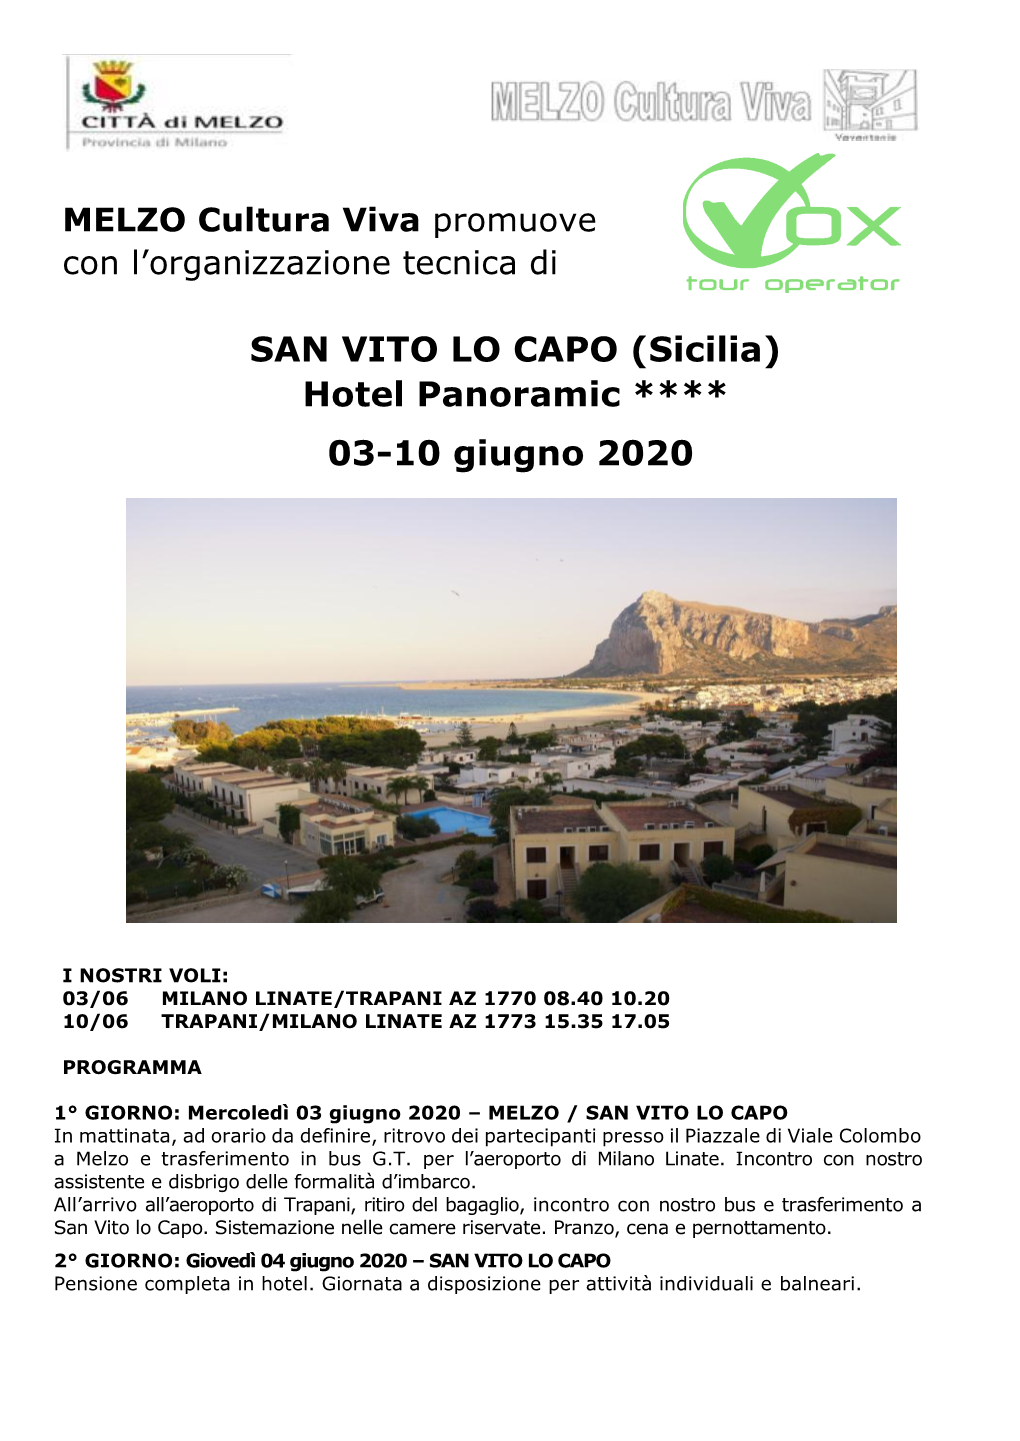 SAN VITO LO CAPO (Sicilia) Hotel Panoramic ****